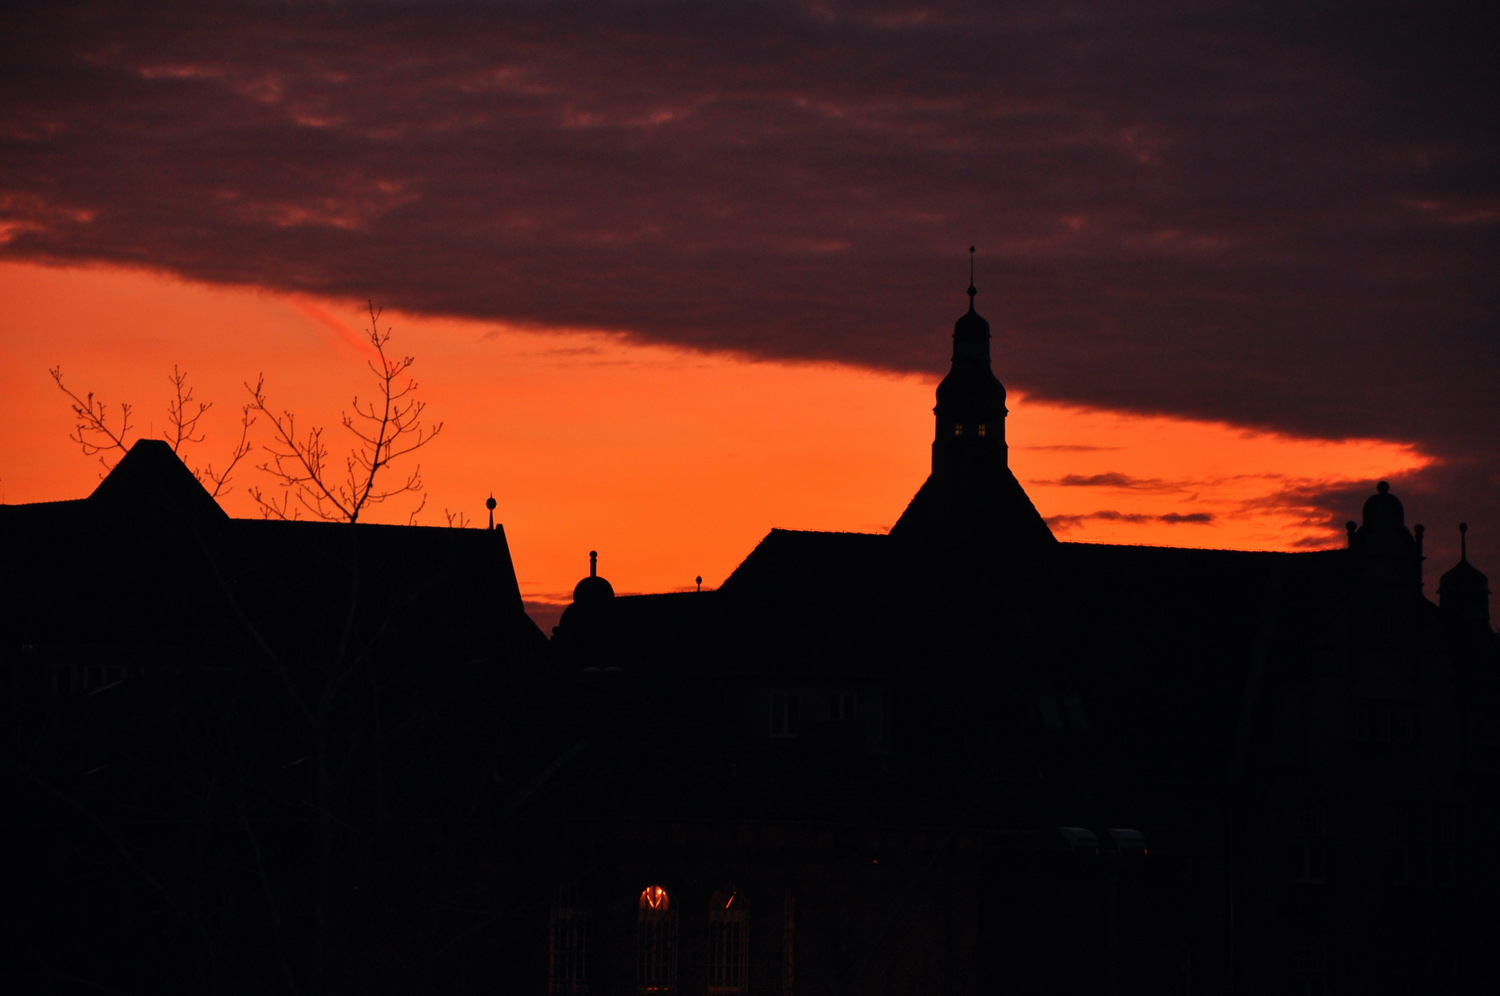 Roter Himmelsstreifen hinter der Silhouette Oldenburgs